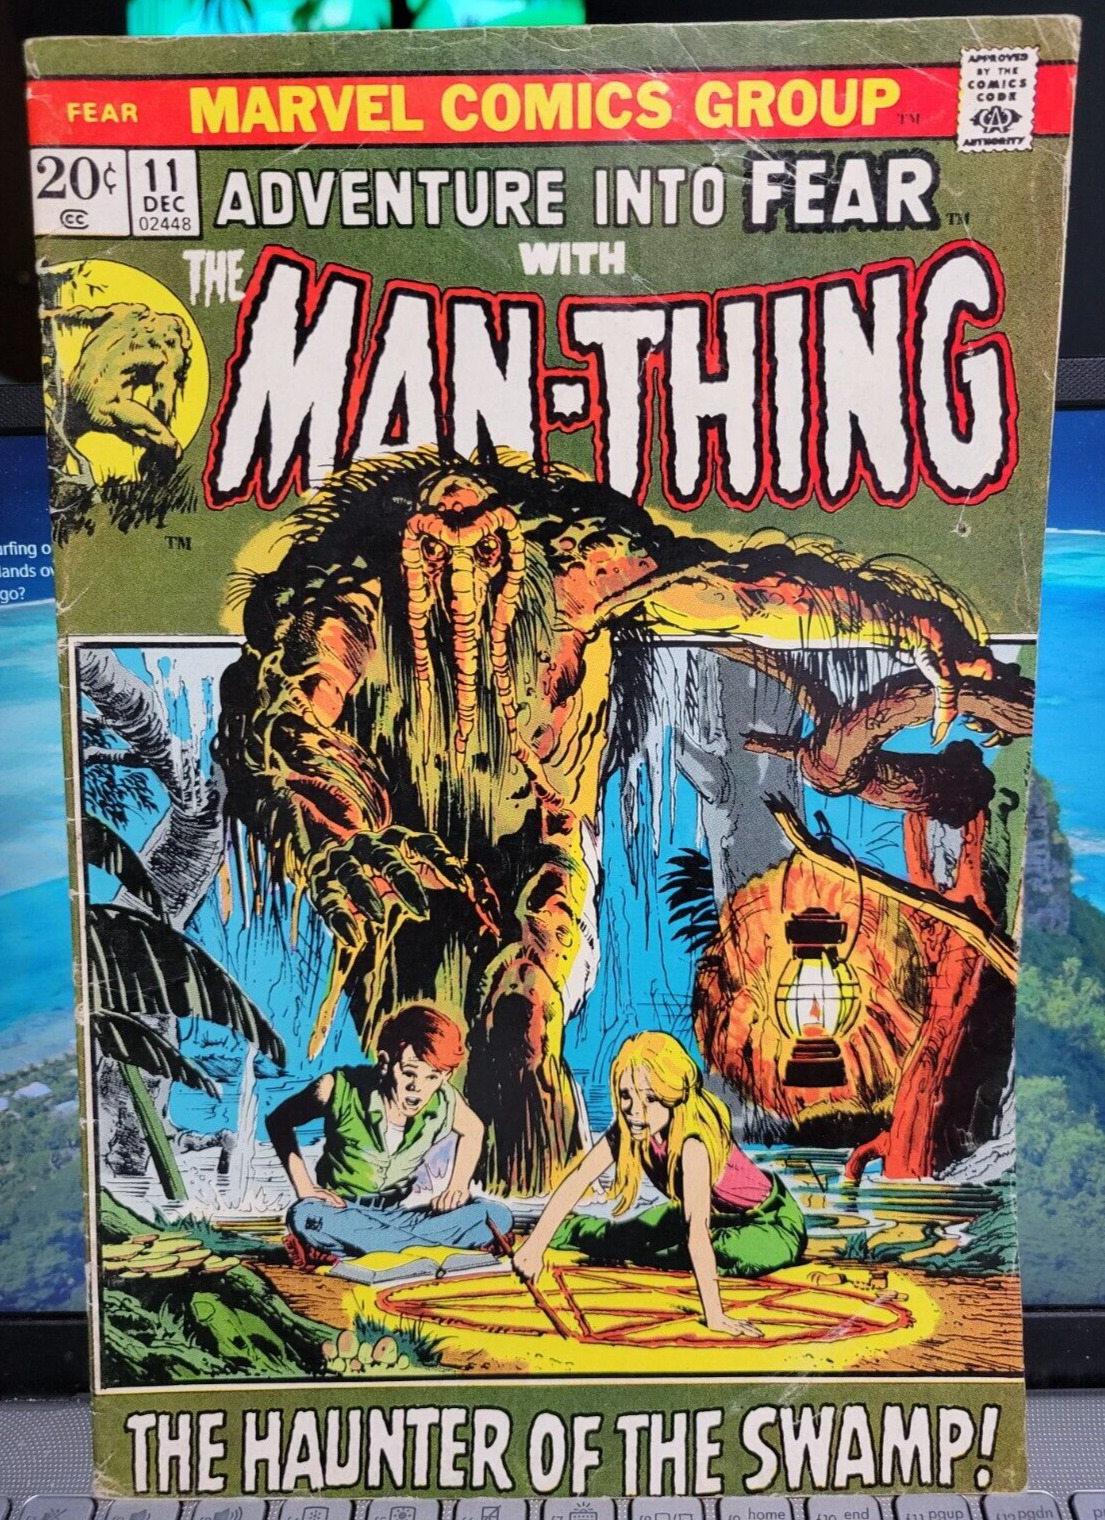 Fear 11 - Man Thing